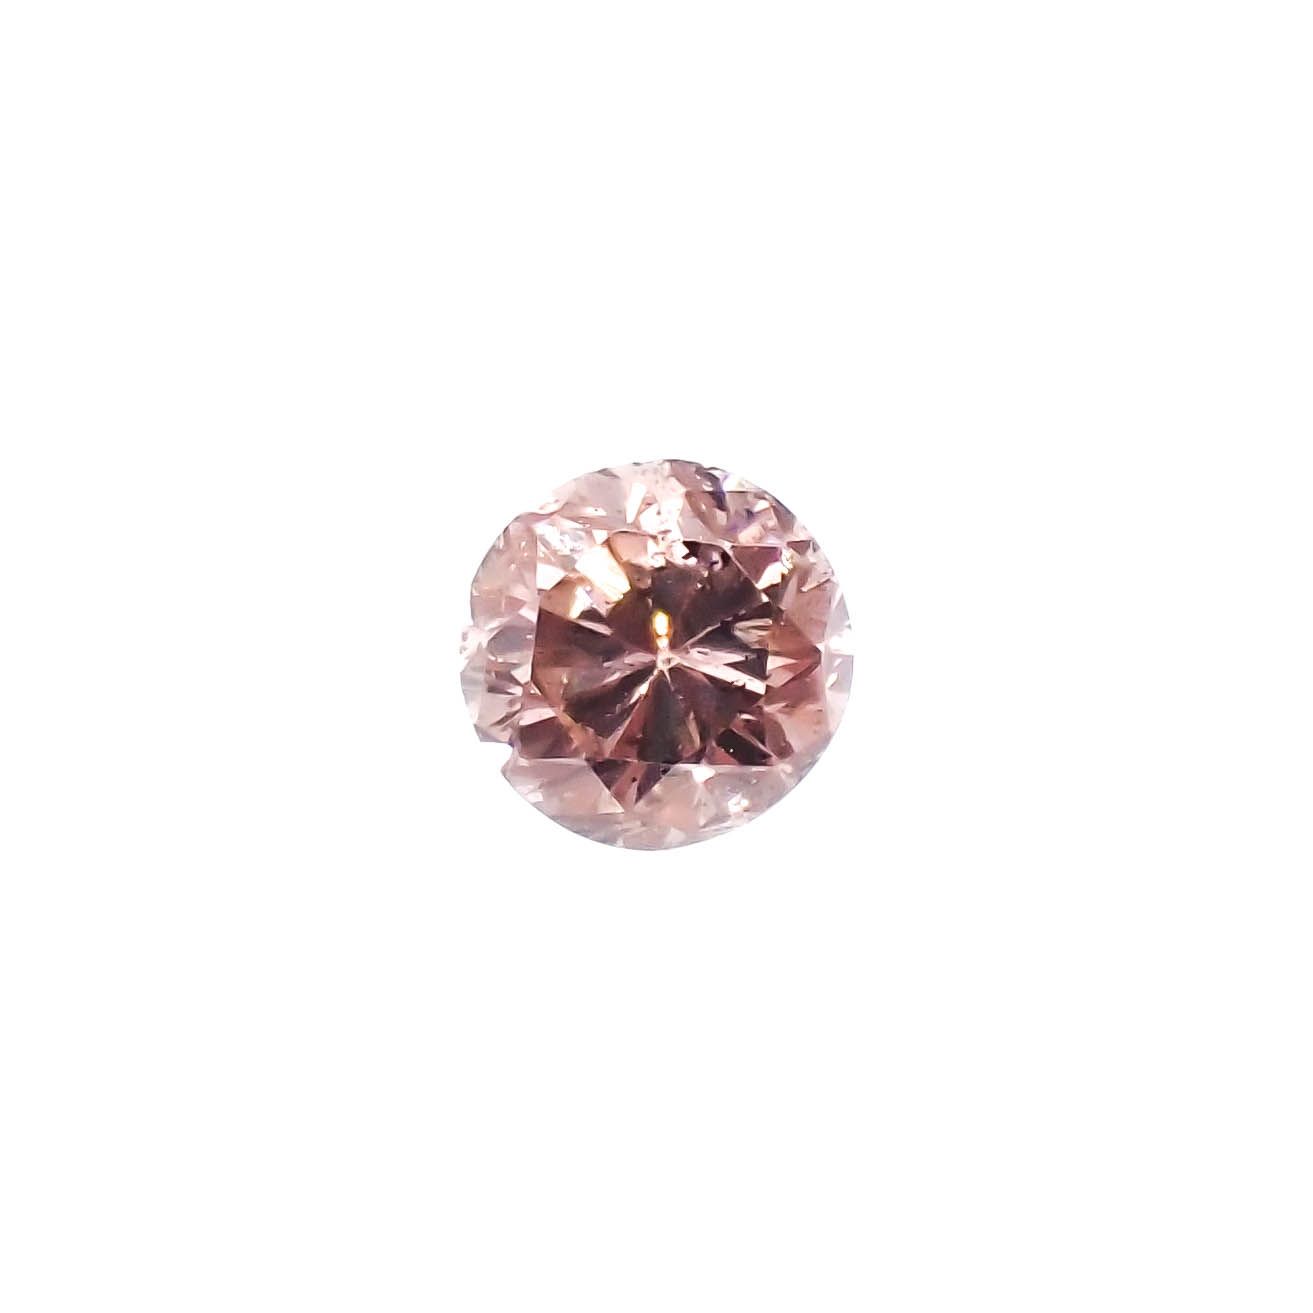 └宝石名から探す / ダイヤモンド / ピンクダイヤモンド 通販 | TOP